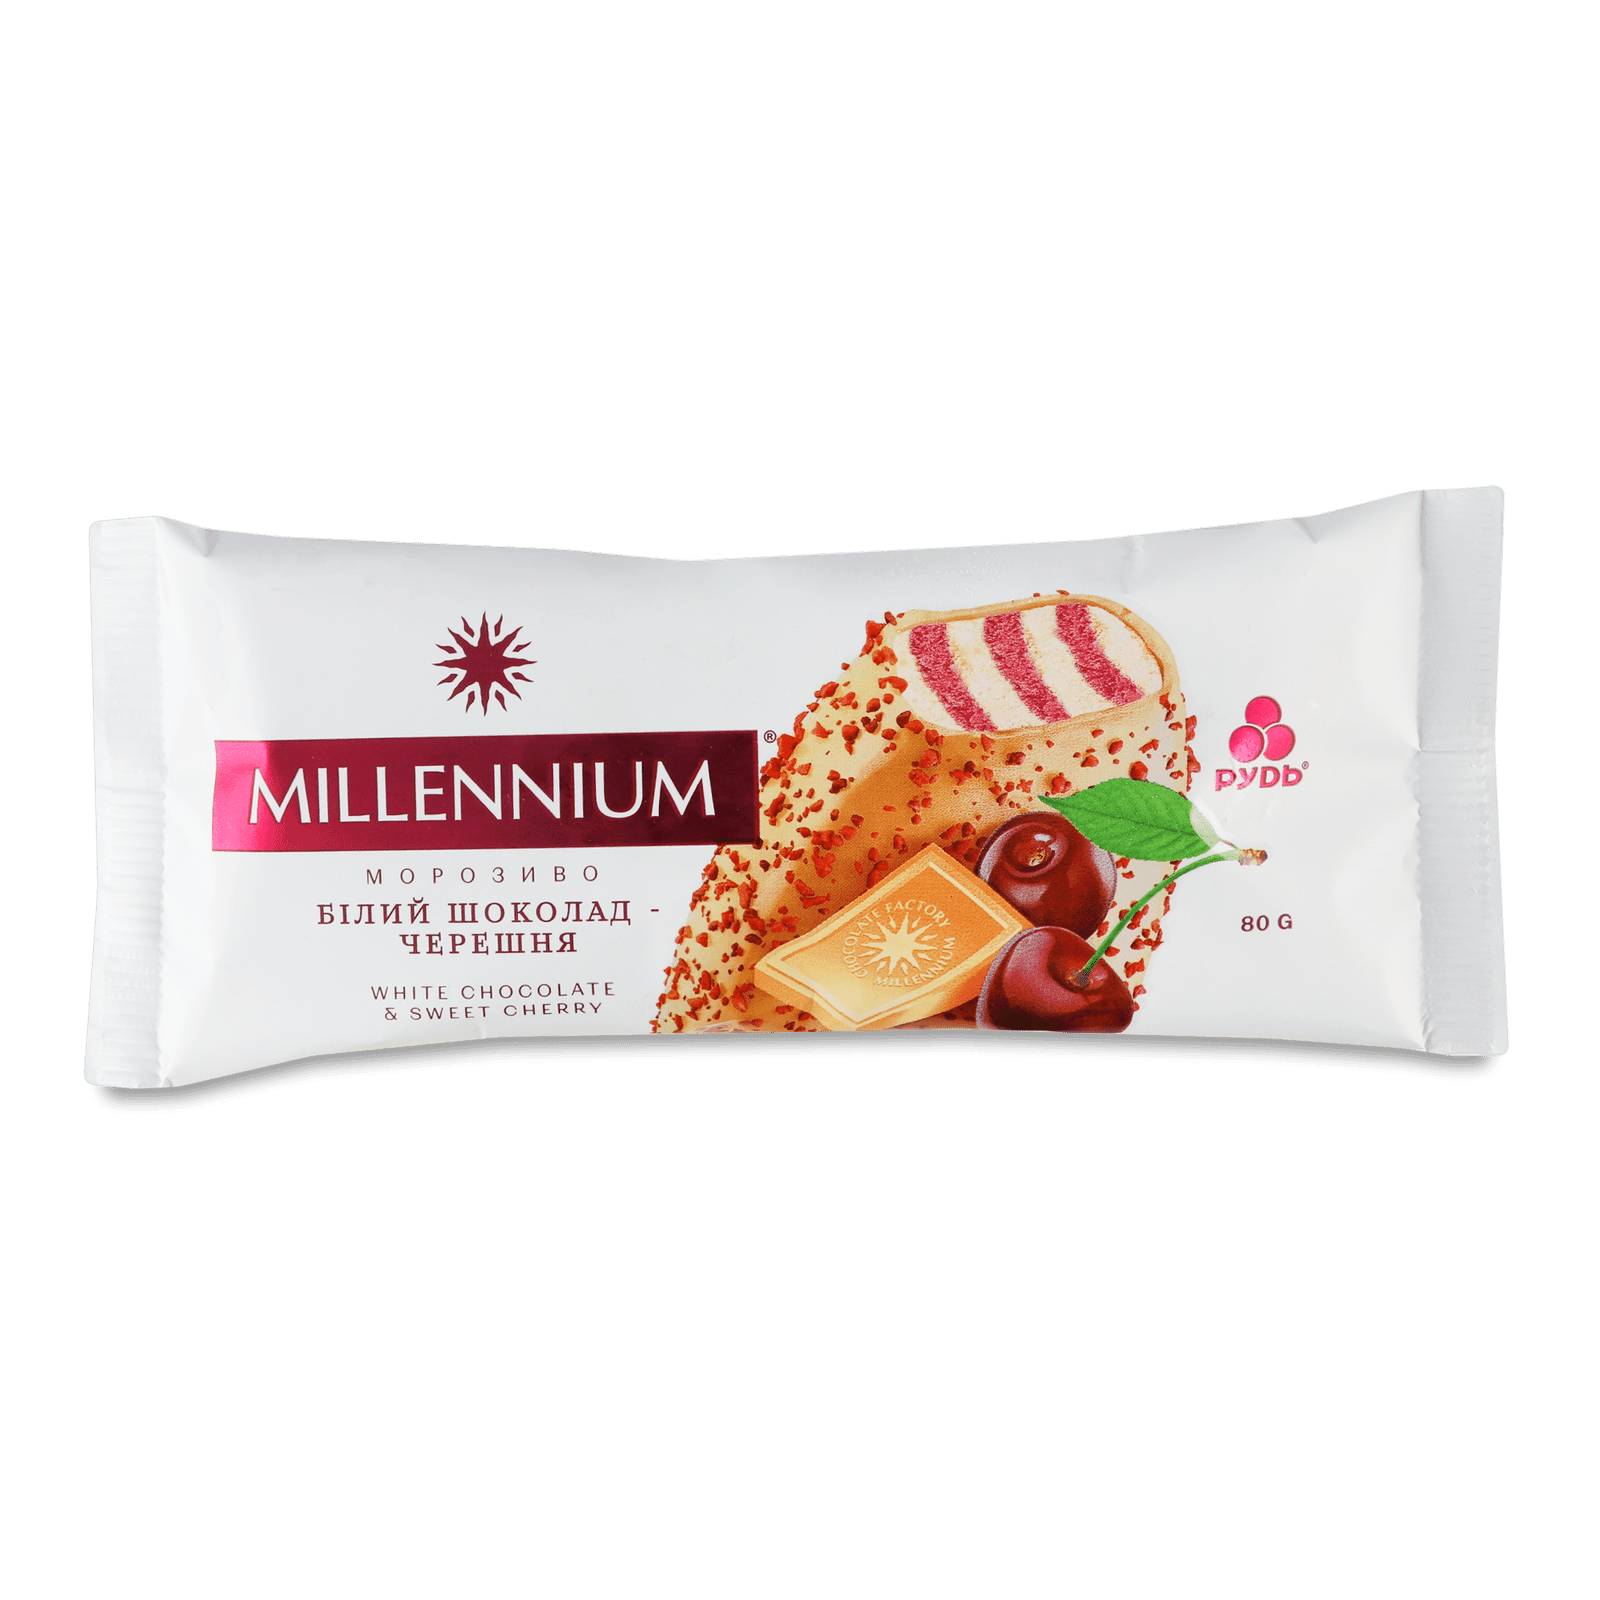 Морозиво Рудь Millenium білий шоколад-черешня - 1